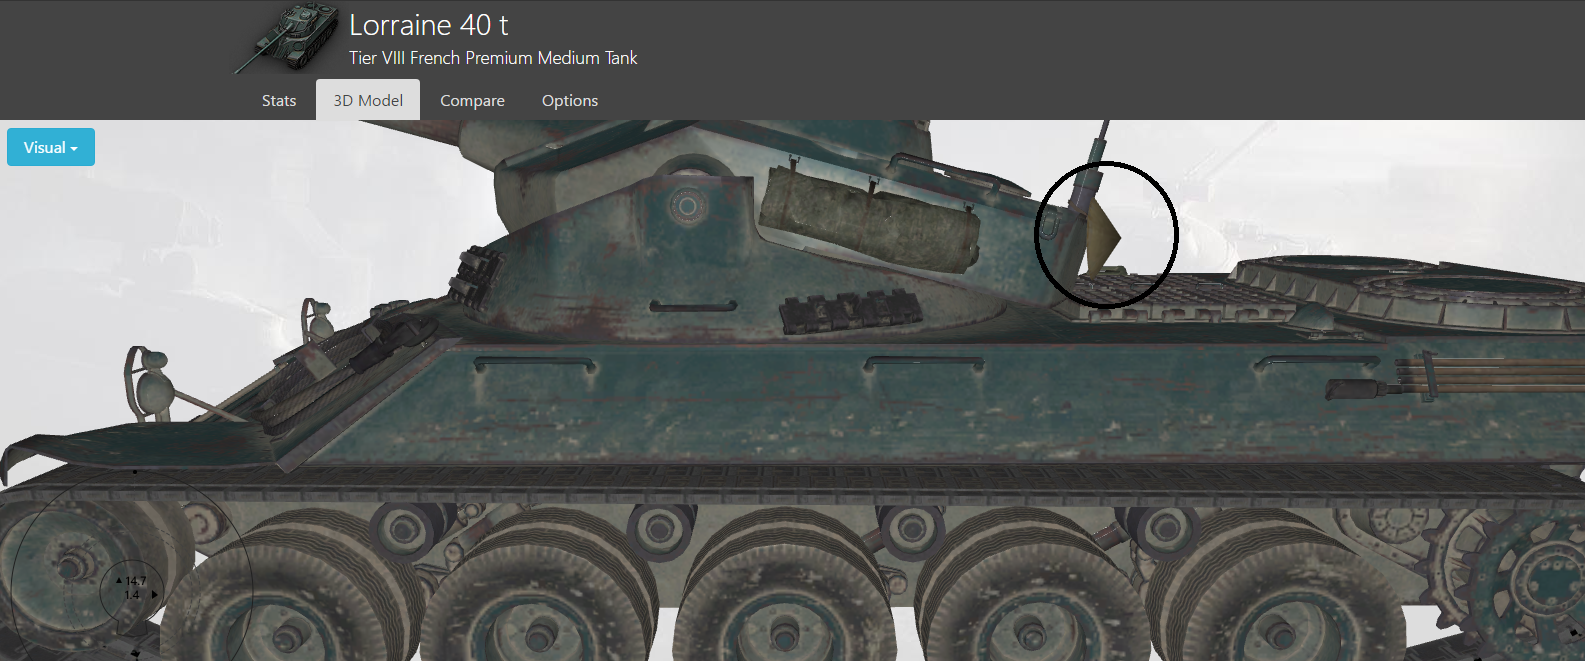 Zaujímavý detail na tanku Lorraine 40t